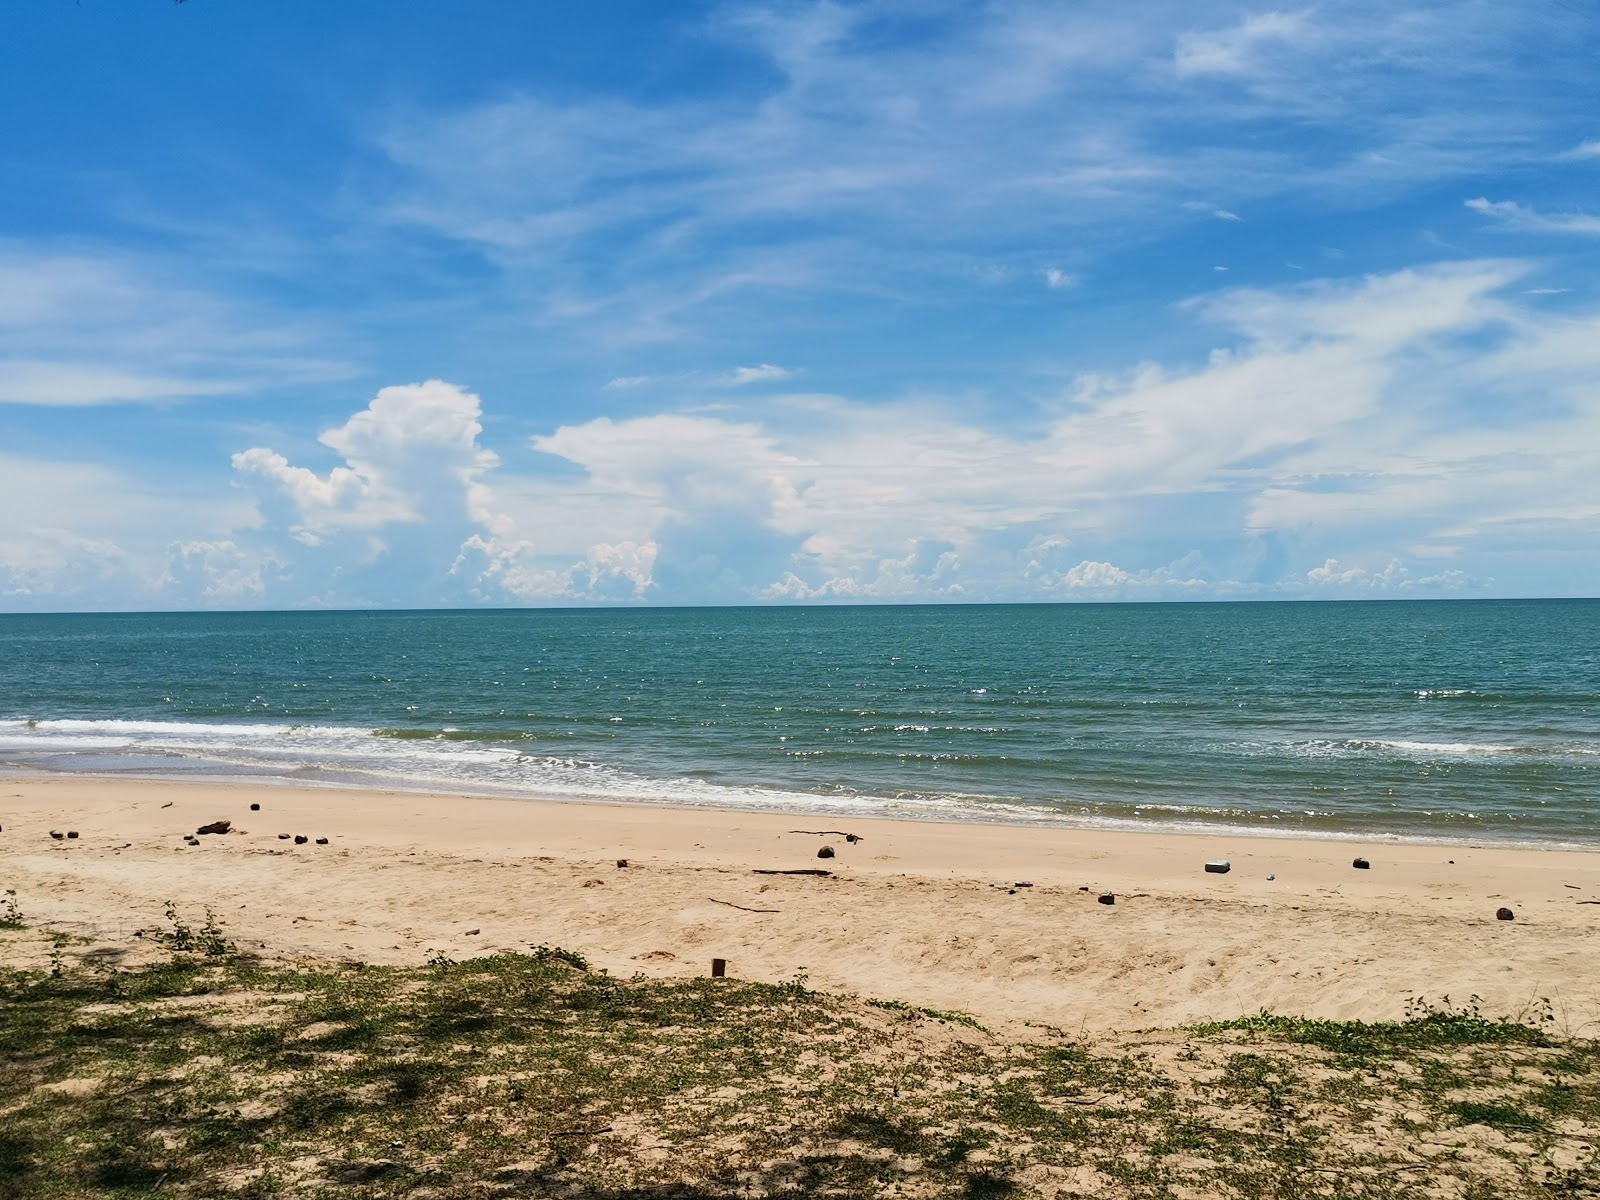 Kaew Beach'in fotoğrafı parlak kum yüzey ile